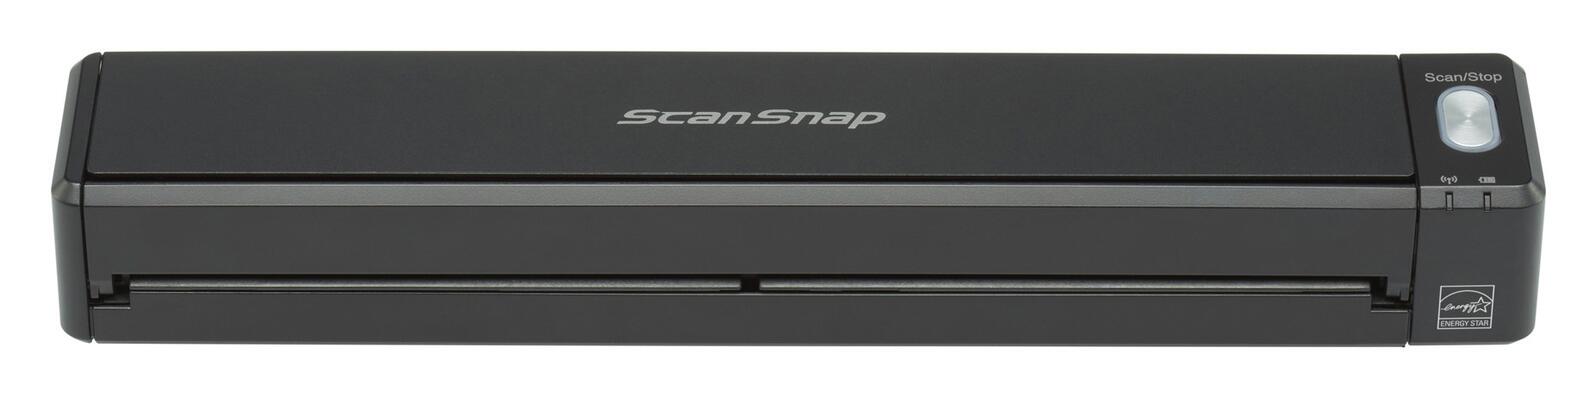 SCANNER FUJITSU ScanSnap iX100 A4 Portatile a batteria 5.2 secondi/pagina Risolu - Bild 1 von 1